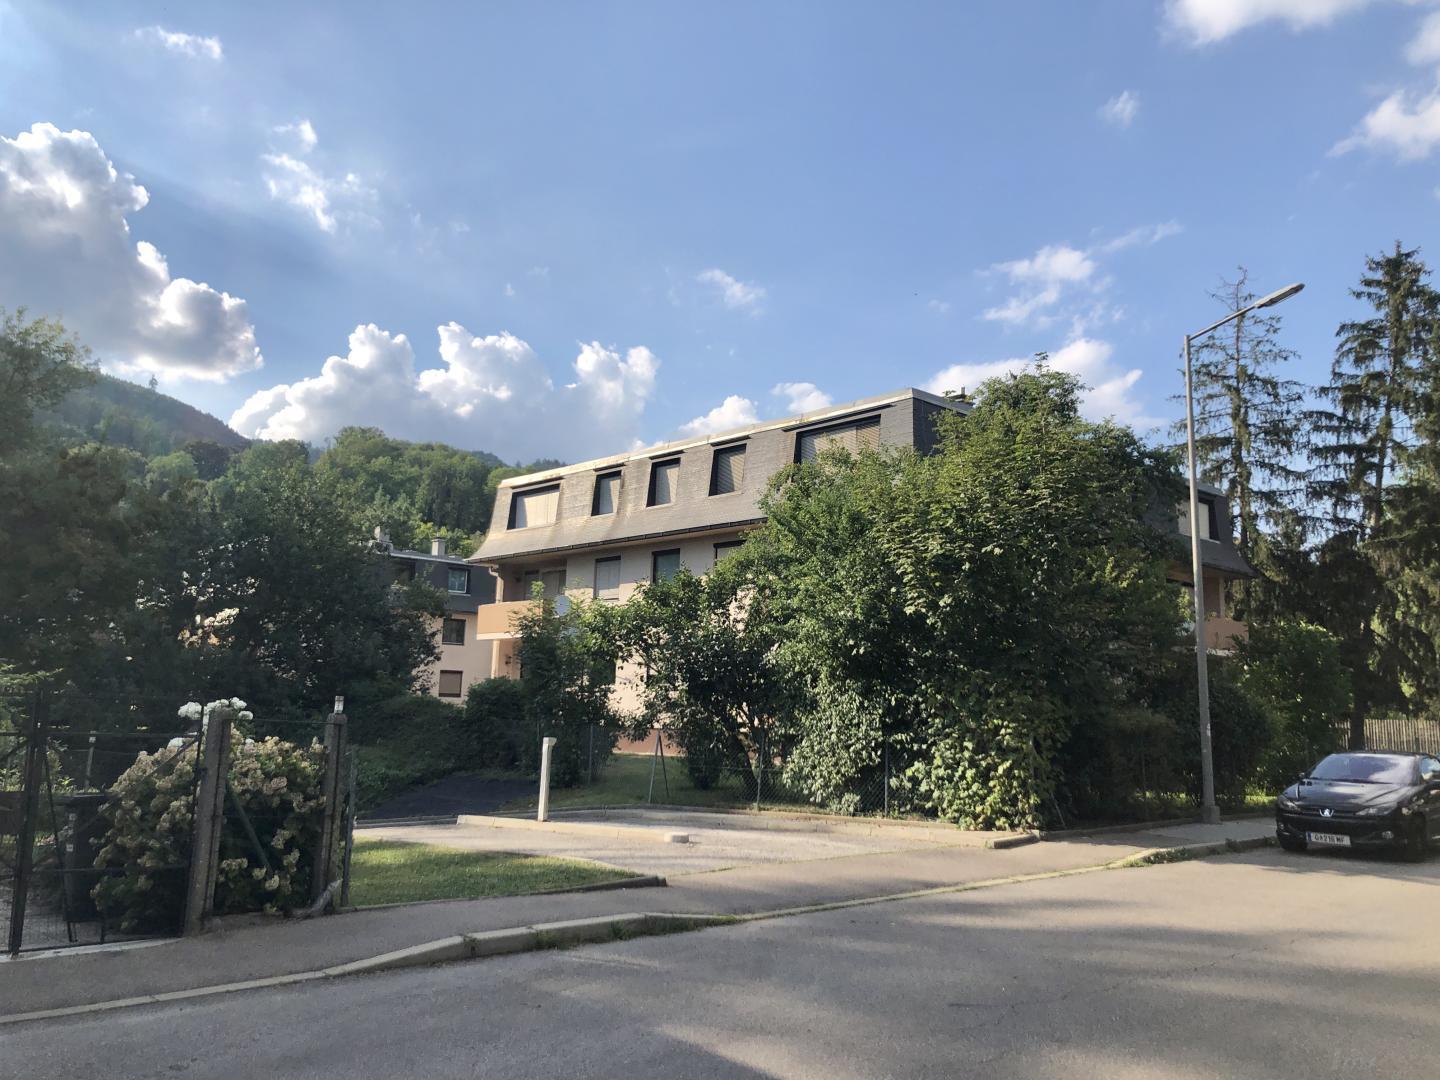 Wohnung zu mieten: Johanna Kollegger Strasse, 8020 Graz,14.Bez.:Eggenberg - Umgebung